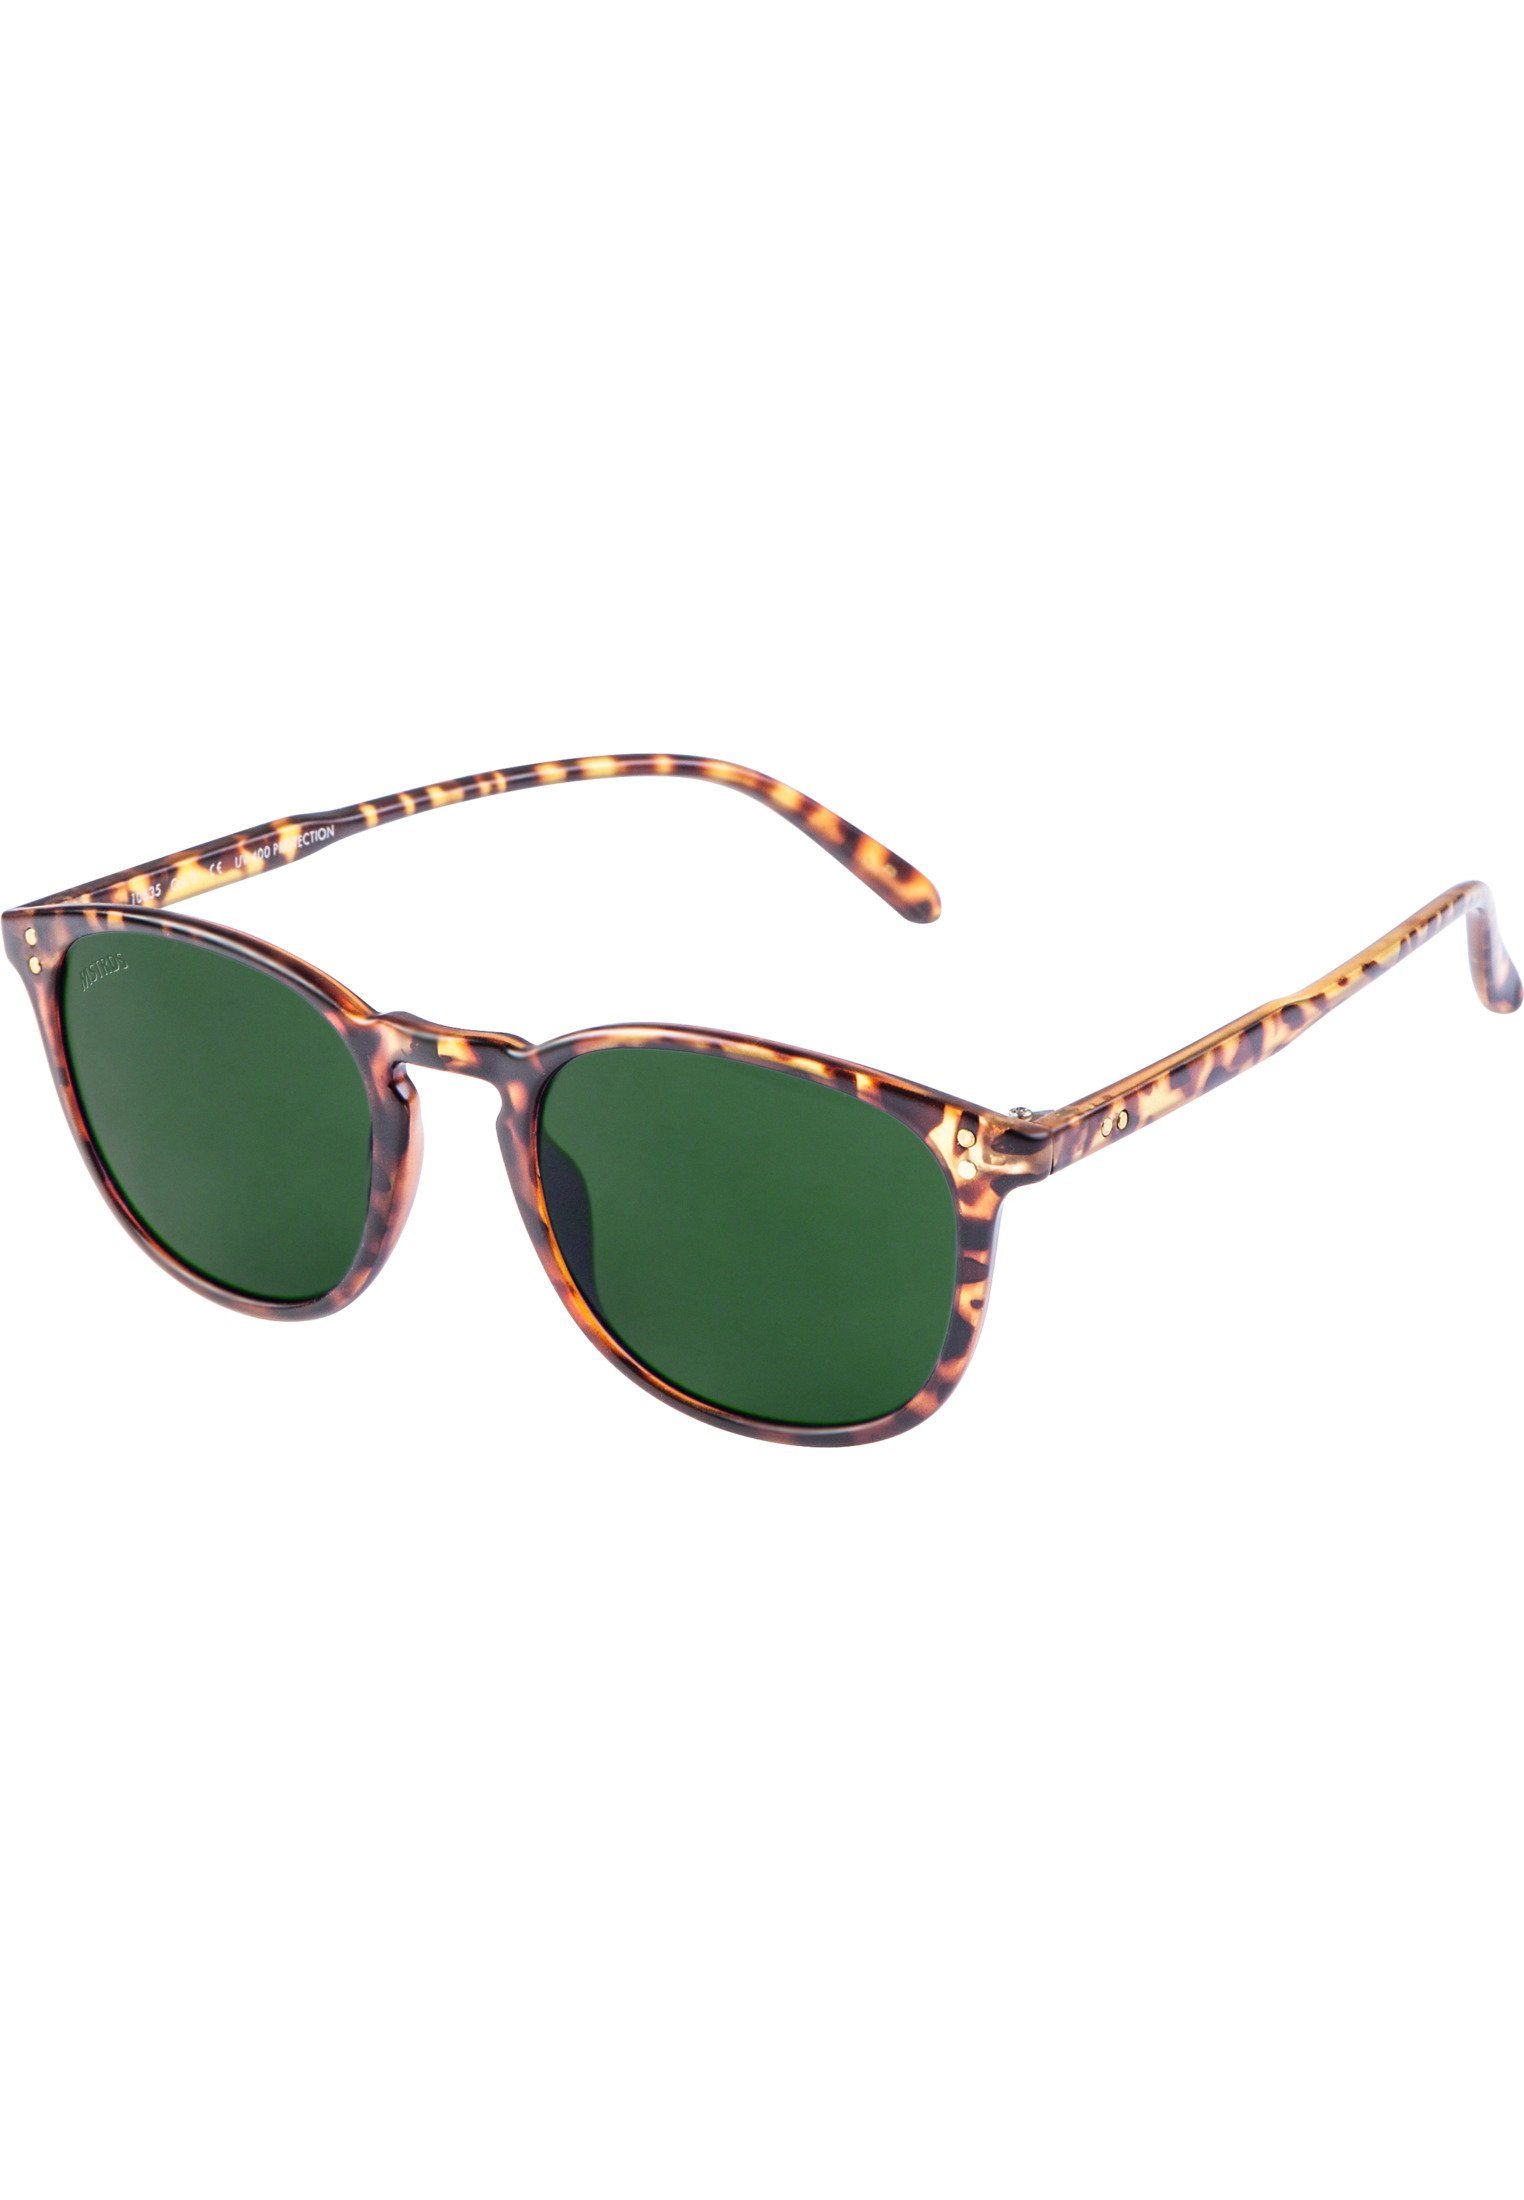 MSTRDS Sonnenbrille Accessoires Sunglasses havanna/green Arthur